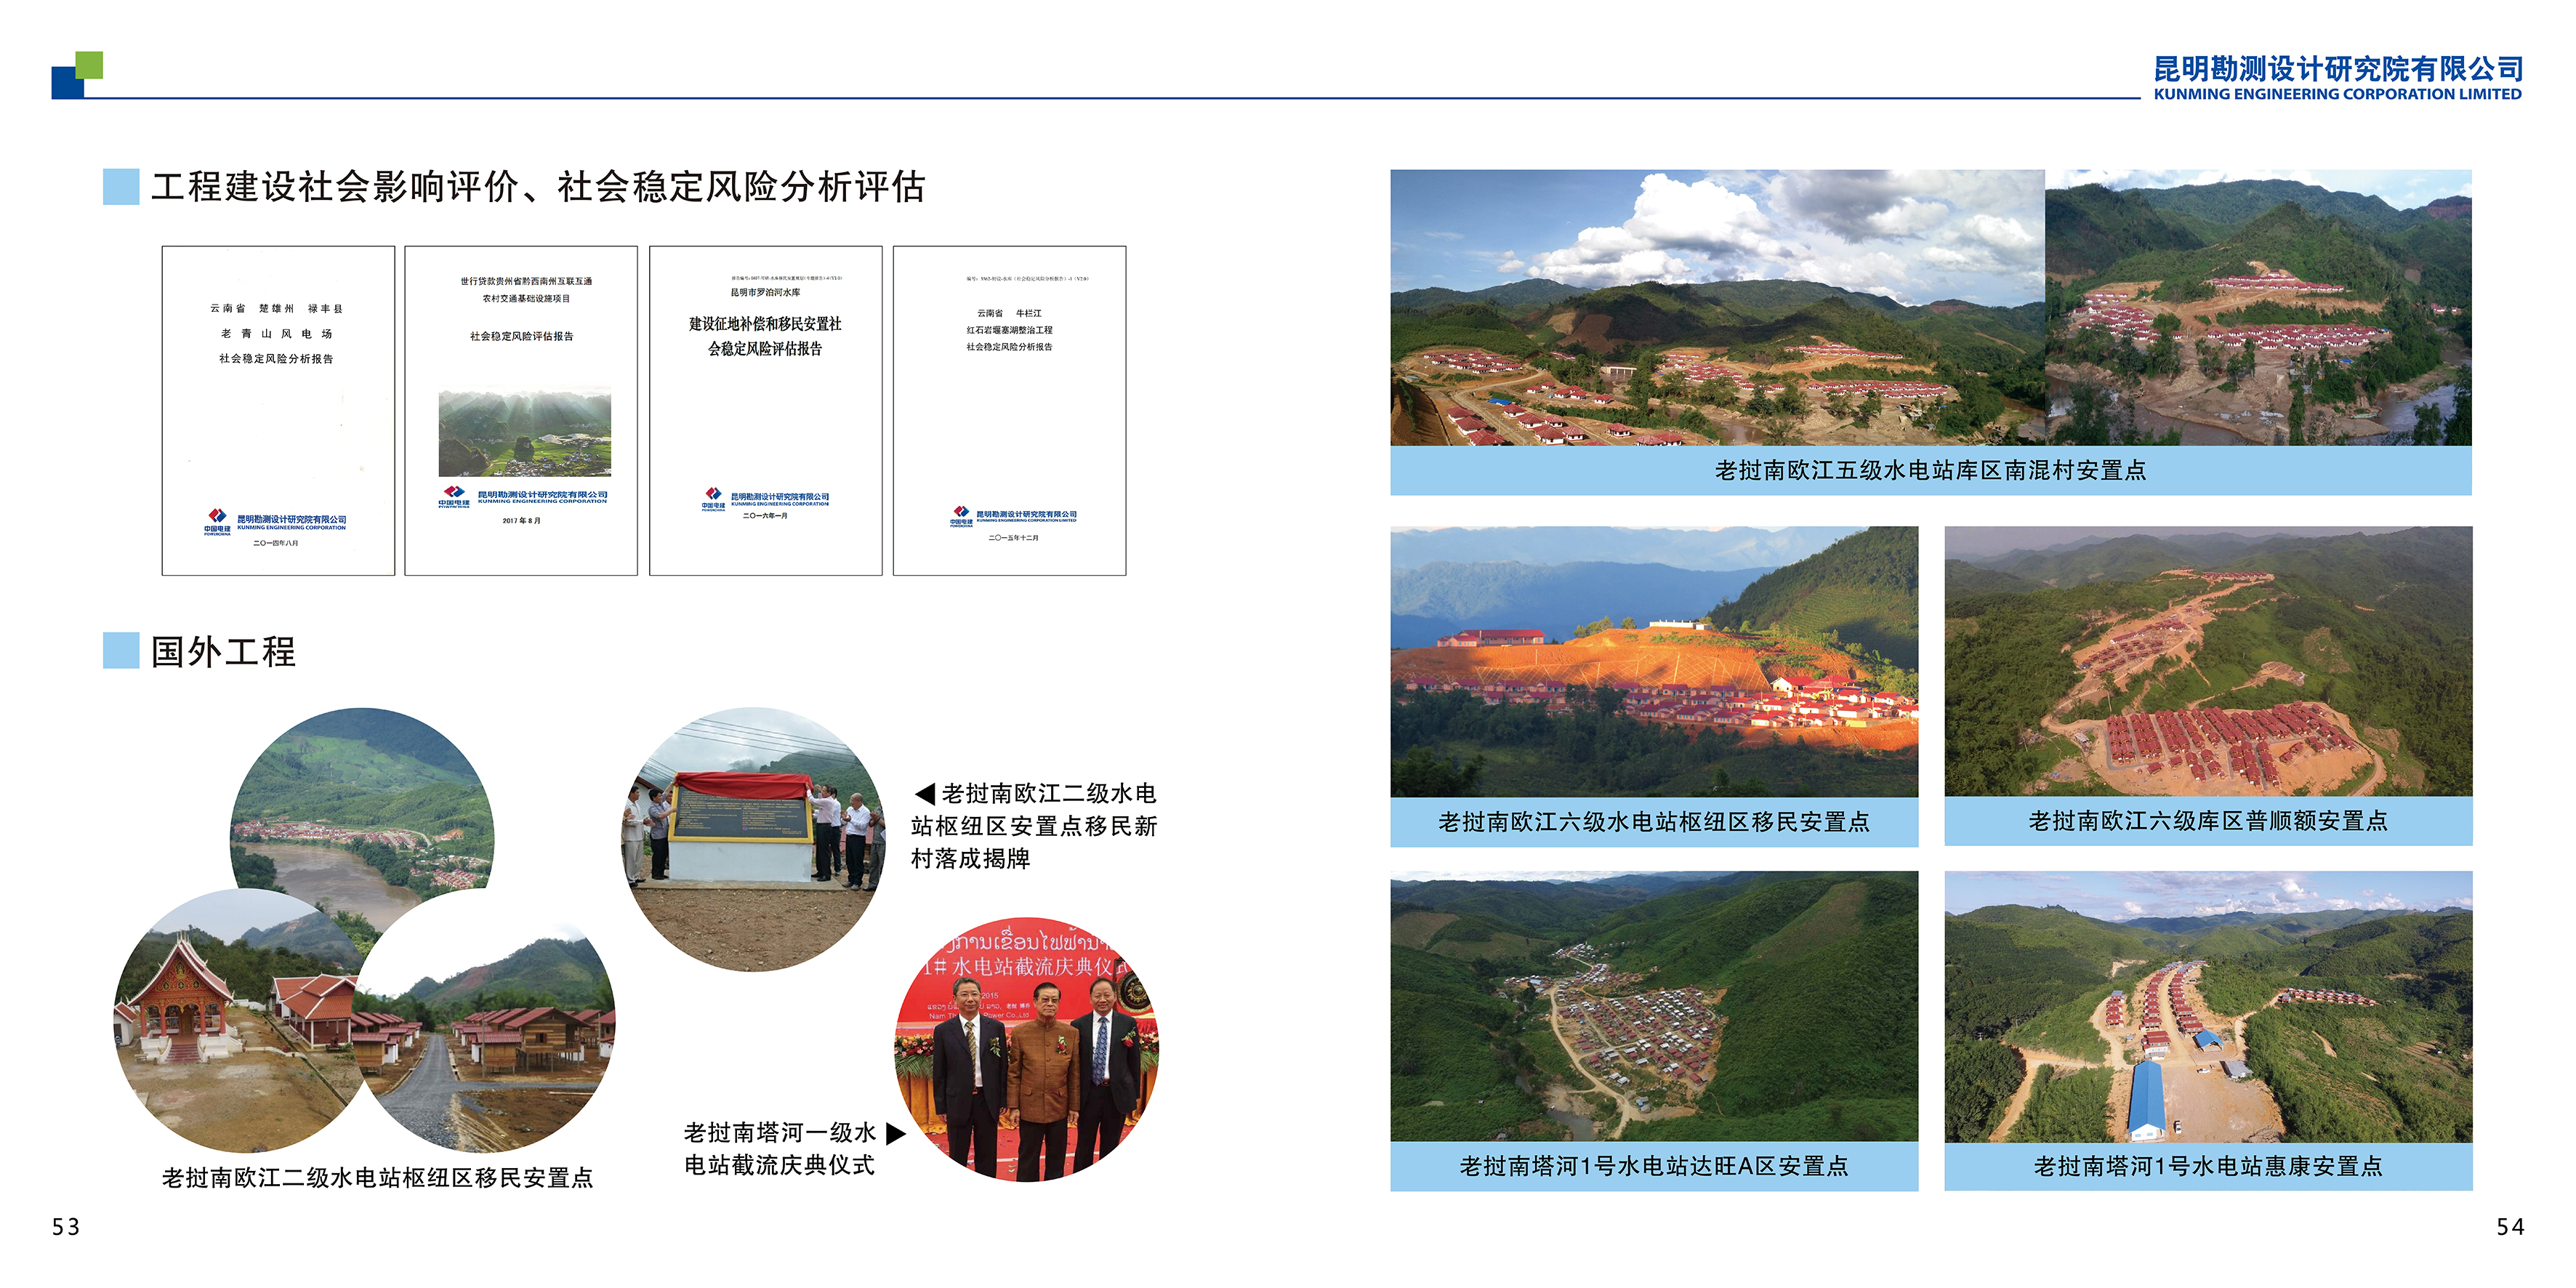 三、中国电建集团昆明勘测设计研究院宣传画册_30.png